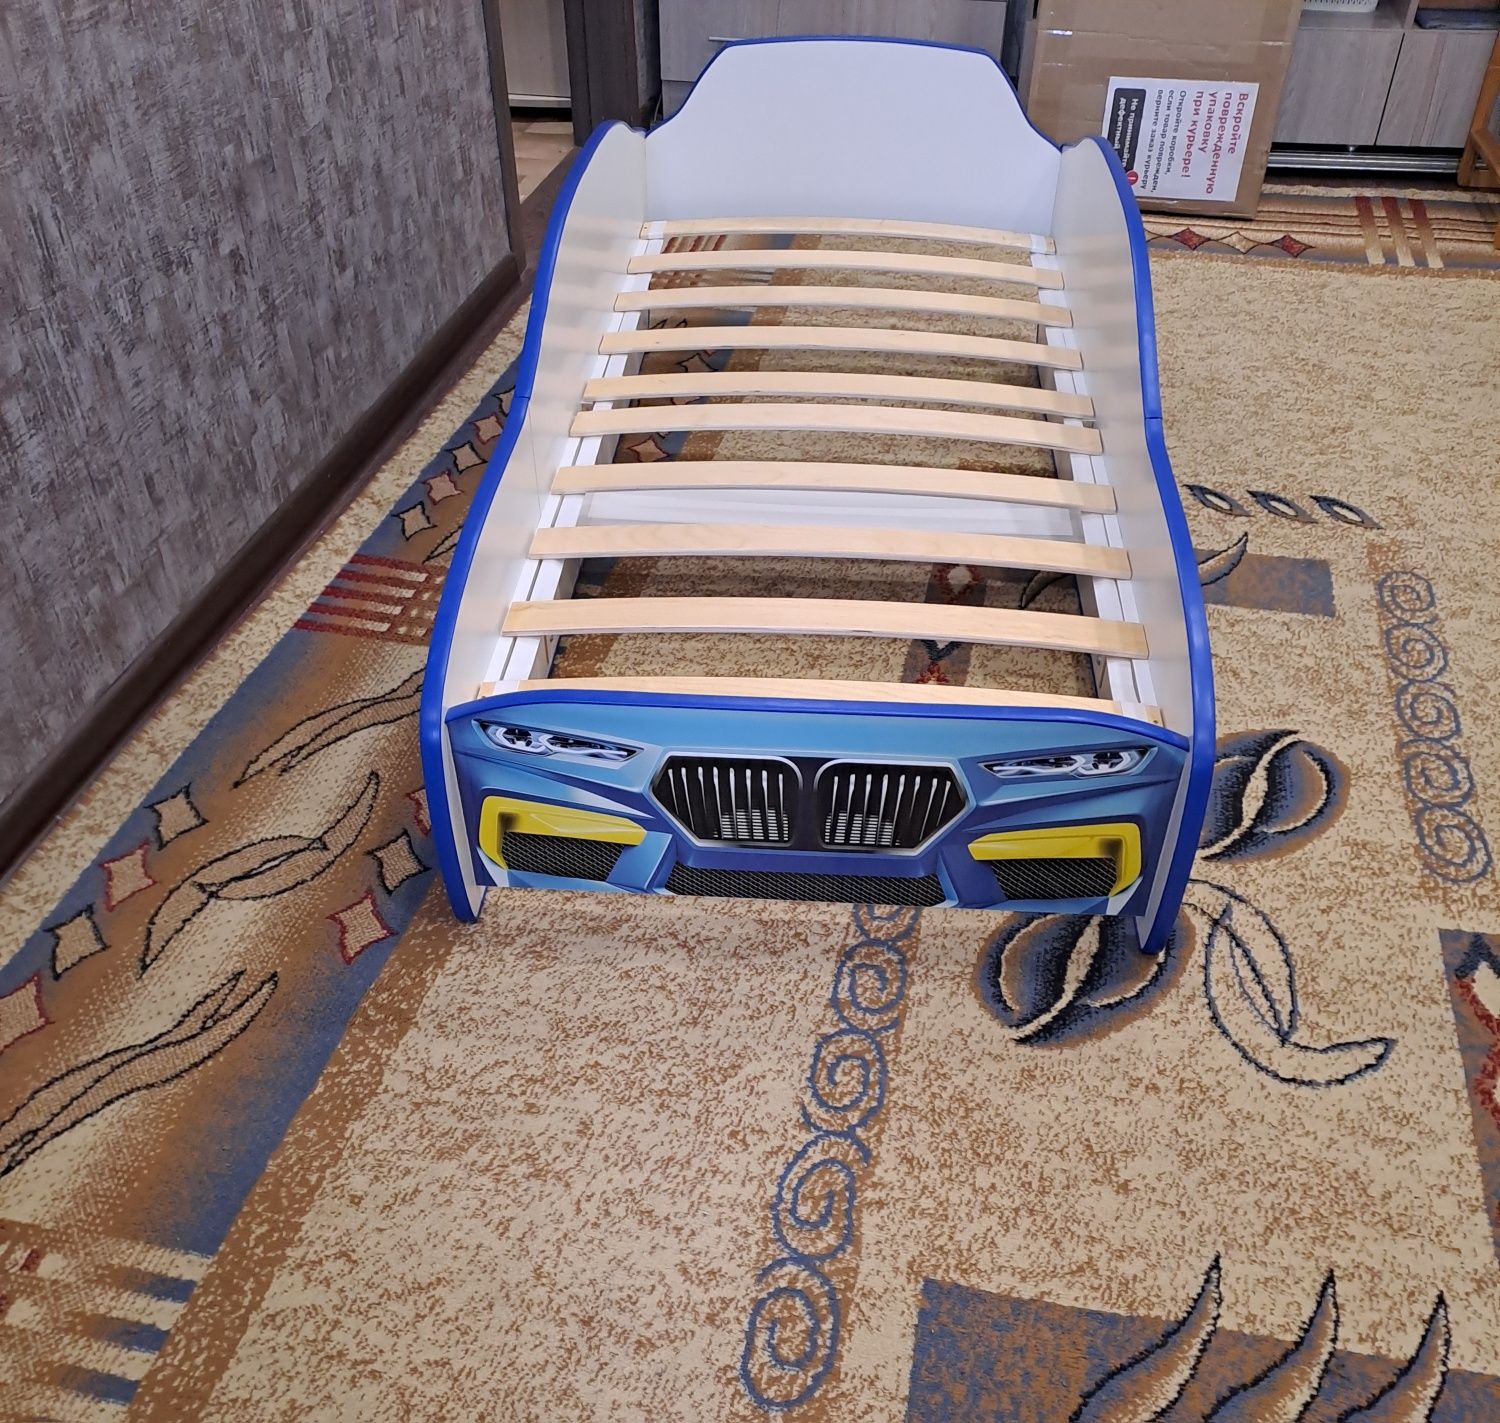 Кровать детская в виде машины